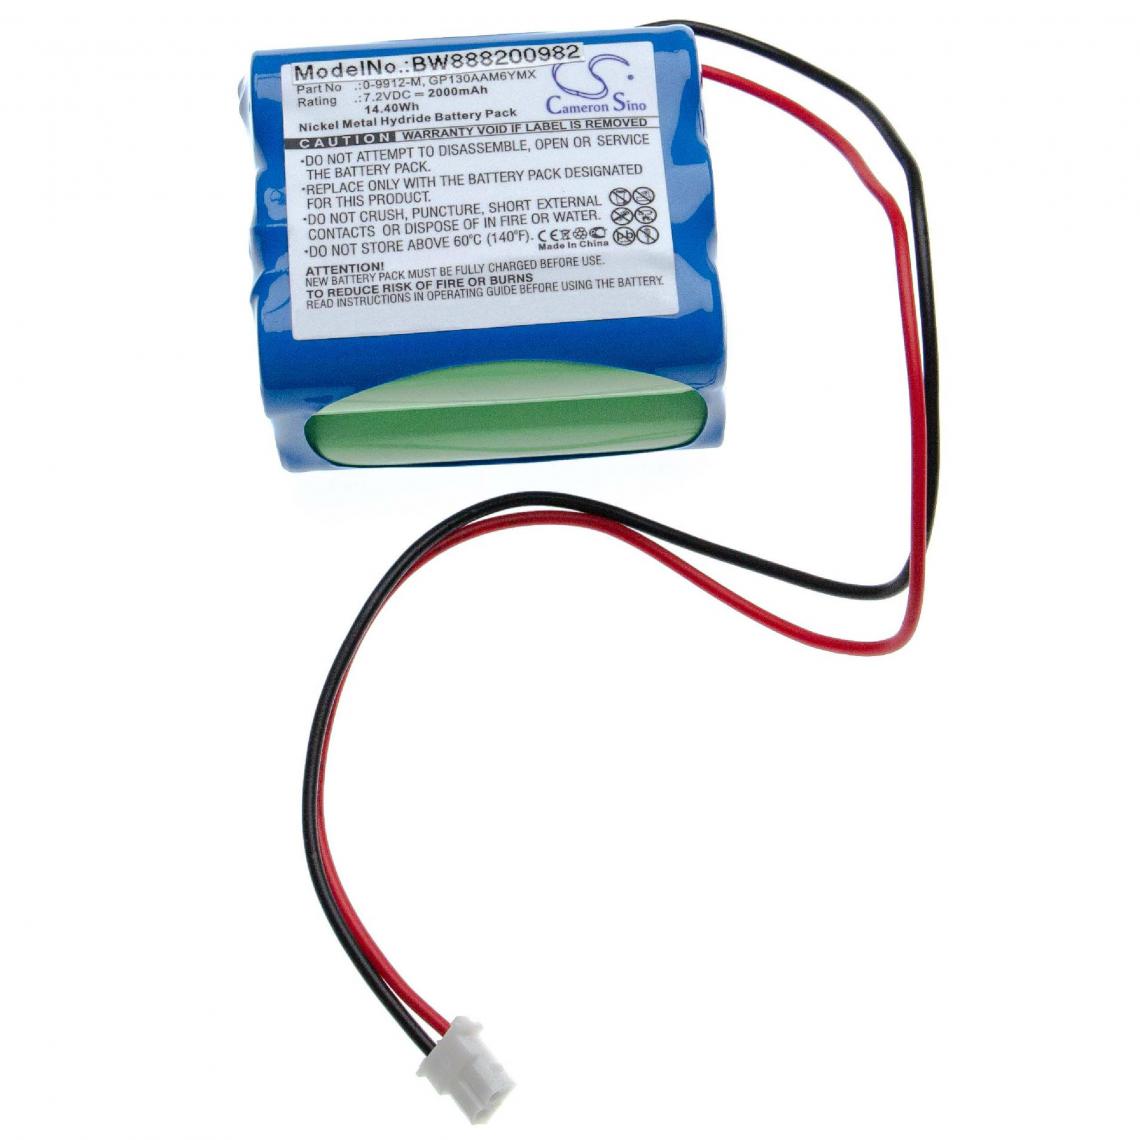 Vhbw - vhbw batterie compatible avec Visonic PowerMax 0-9912-H Control Panel alarme maison/contrôle home security (2000mAh, 7.2V, NiMH) - Autre appareil de mesure